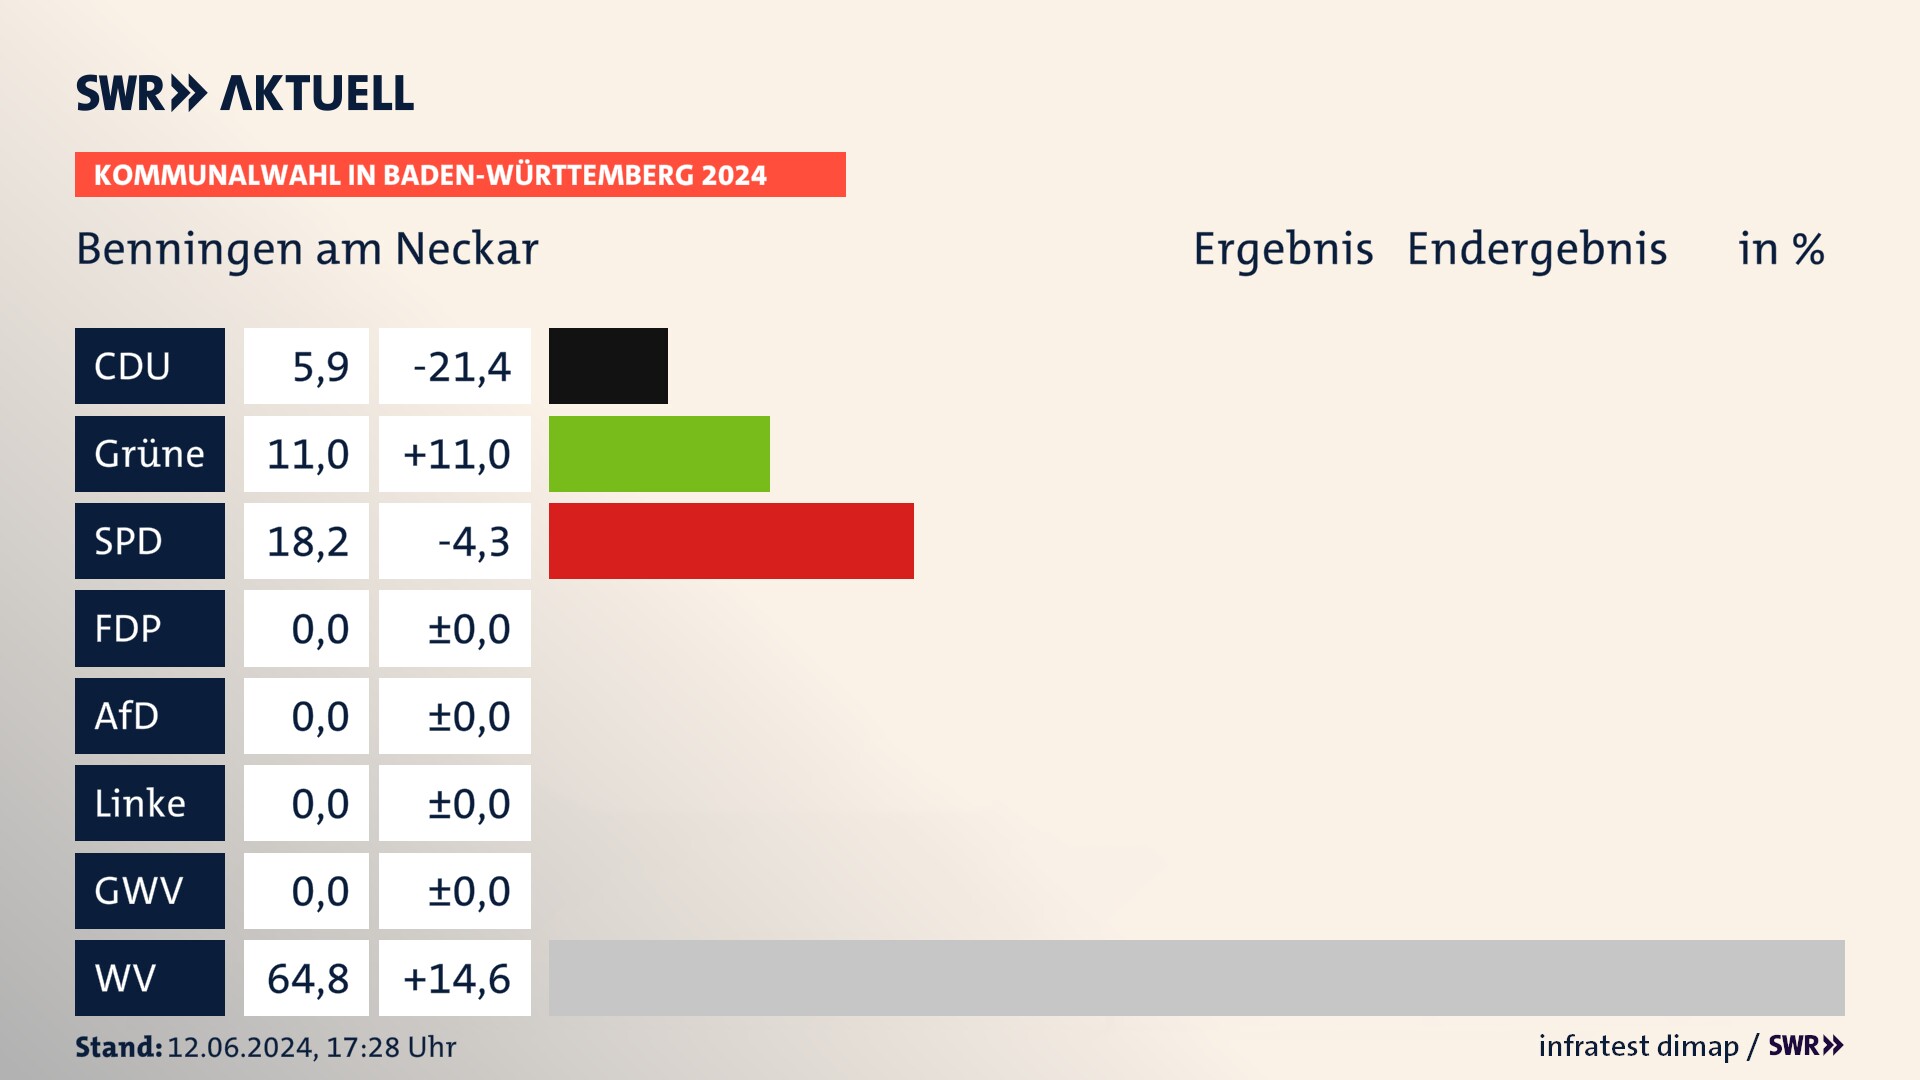 Kommunalwahl 2024 Endergebnis Zweitstimme für Benningen am Neckar. In Benningen am Neckar erzielt die CDU 5,9 Prozent der gültigen  Stimmen. Die Grünen landen bei 11,0 Prozent. Die SPD erreicht 18,2 Prozent. Die Wählervereinigungen kommen auf 64,8 Prozent.